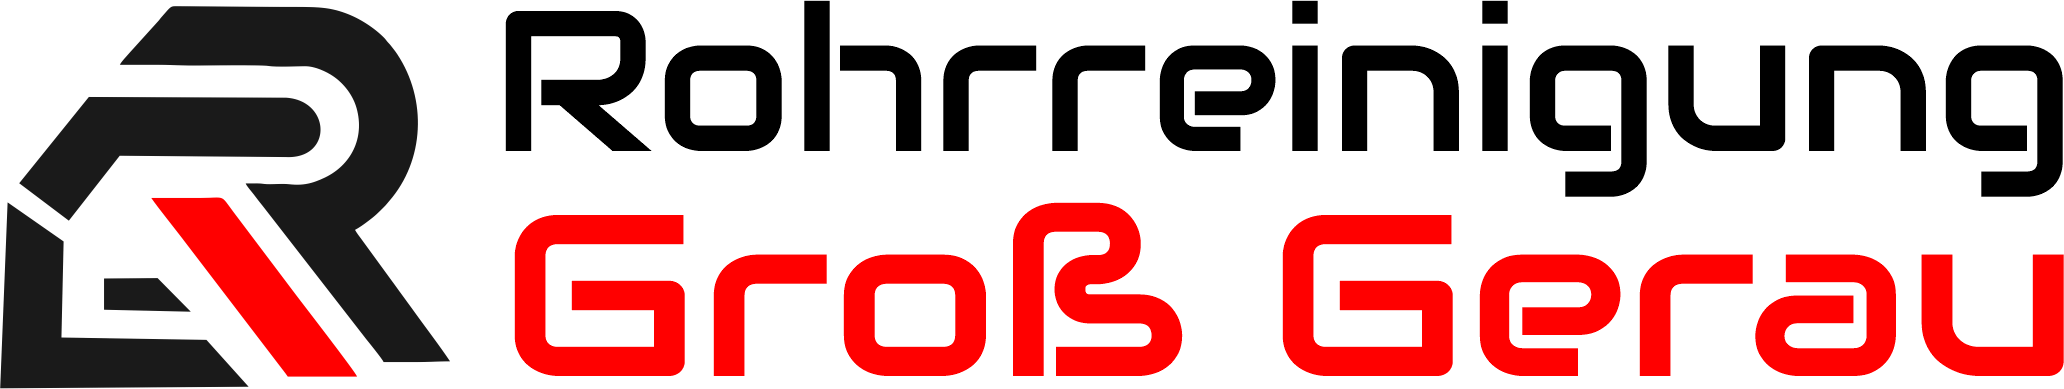 Rohrreinigung Groß Gerau Logo